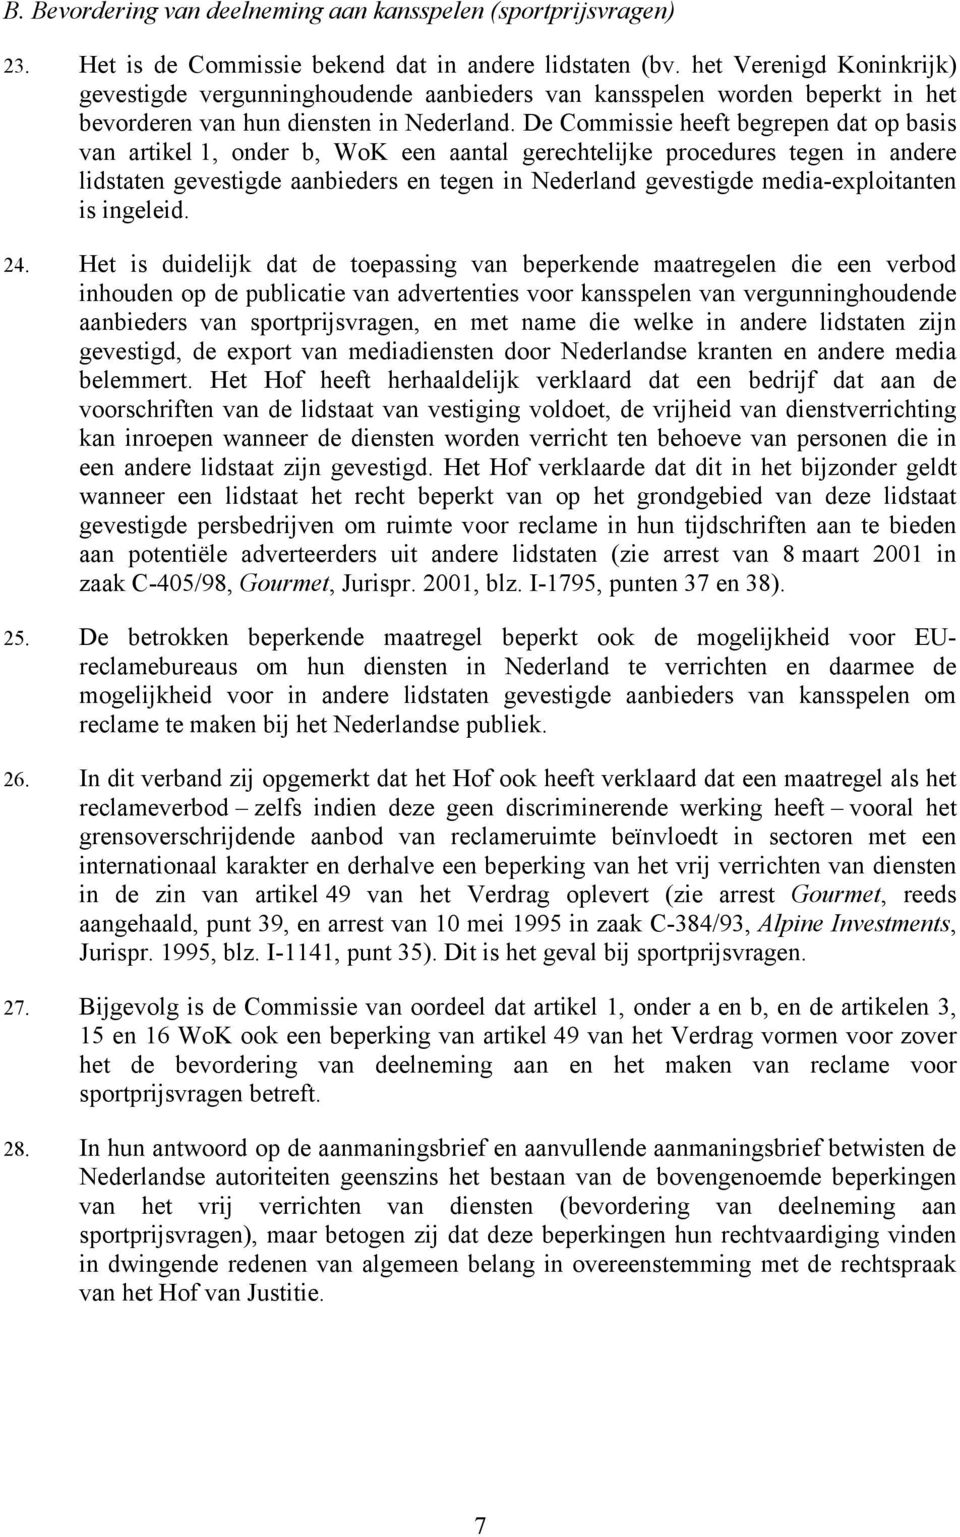 De Commissie heeft begrepen dat op basis van artikel 1, onder b, WoK een aantal gerechtelijke procedures tegen in andere lidstaten gevestigde aanbieders en tegen in Nederland gevestigde